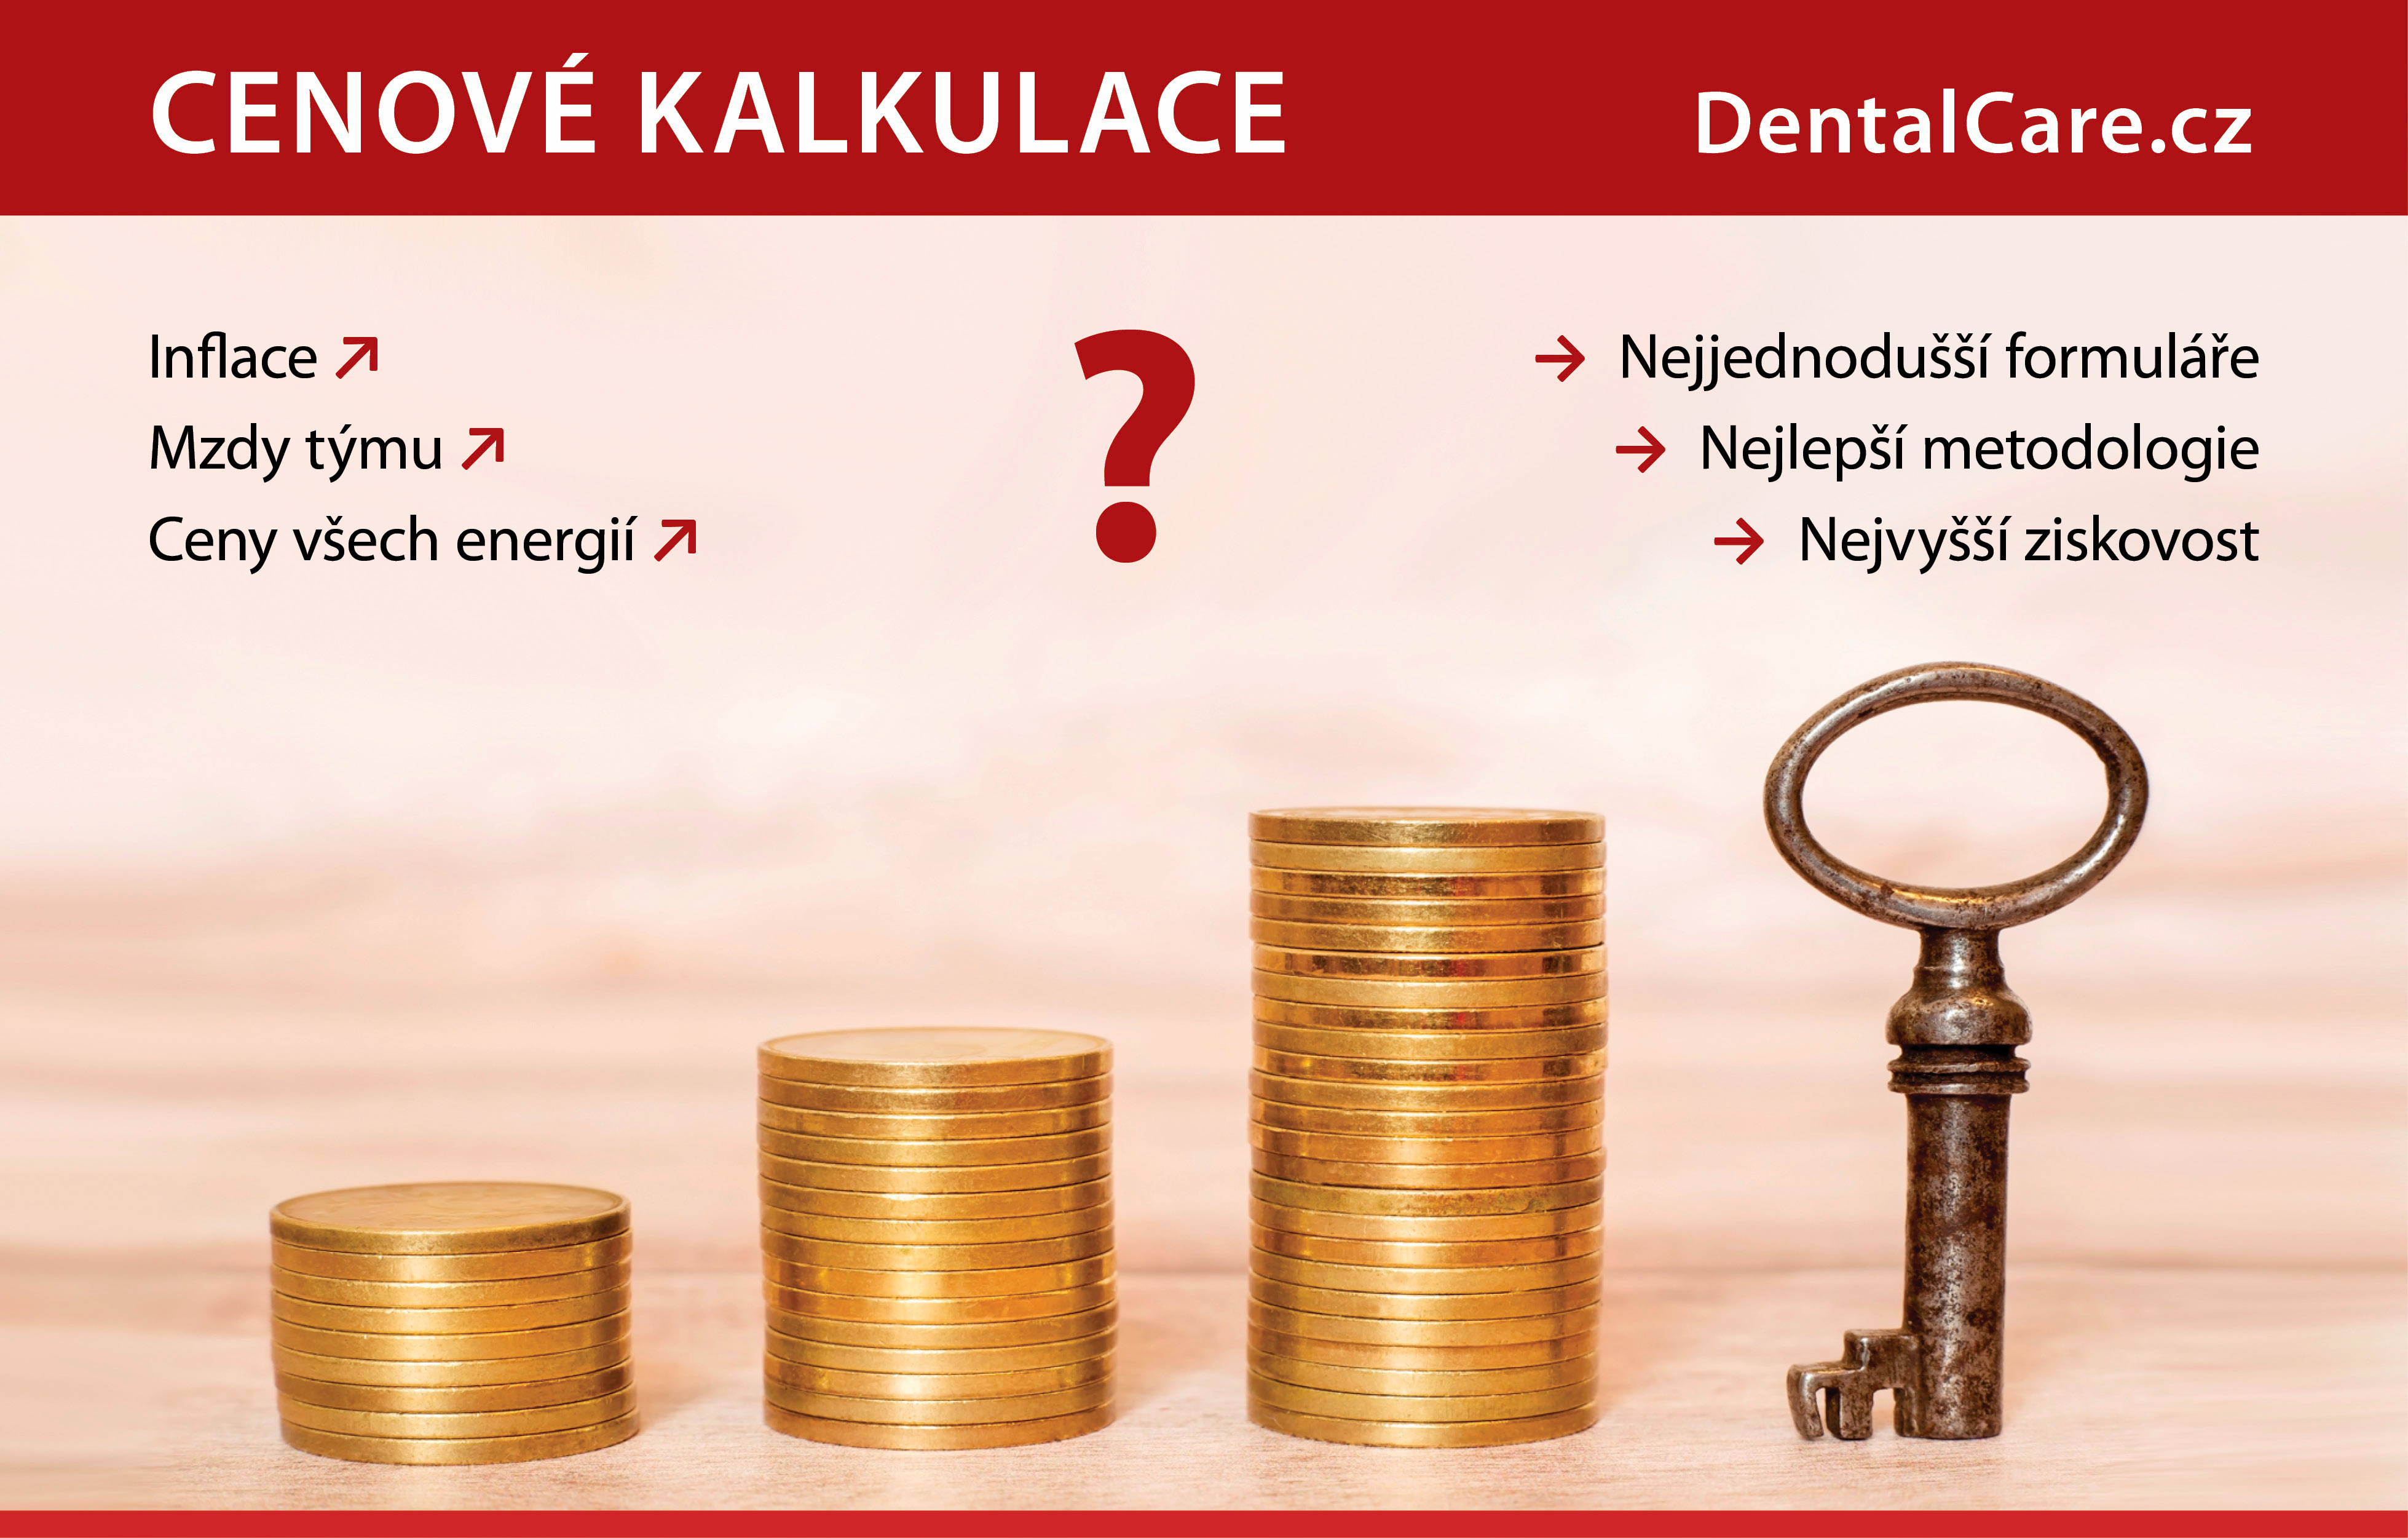 https://www.dentalcare.cz/cenove-kalkulace/